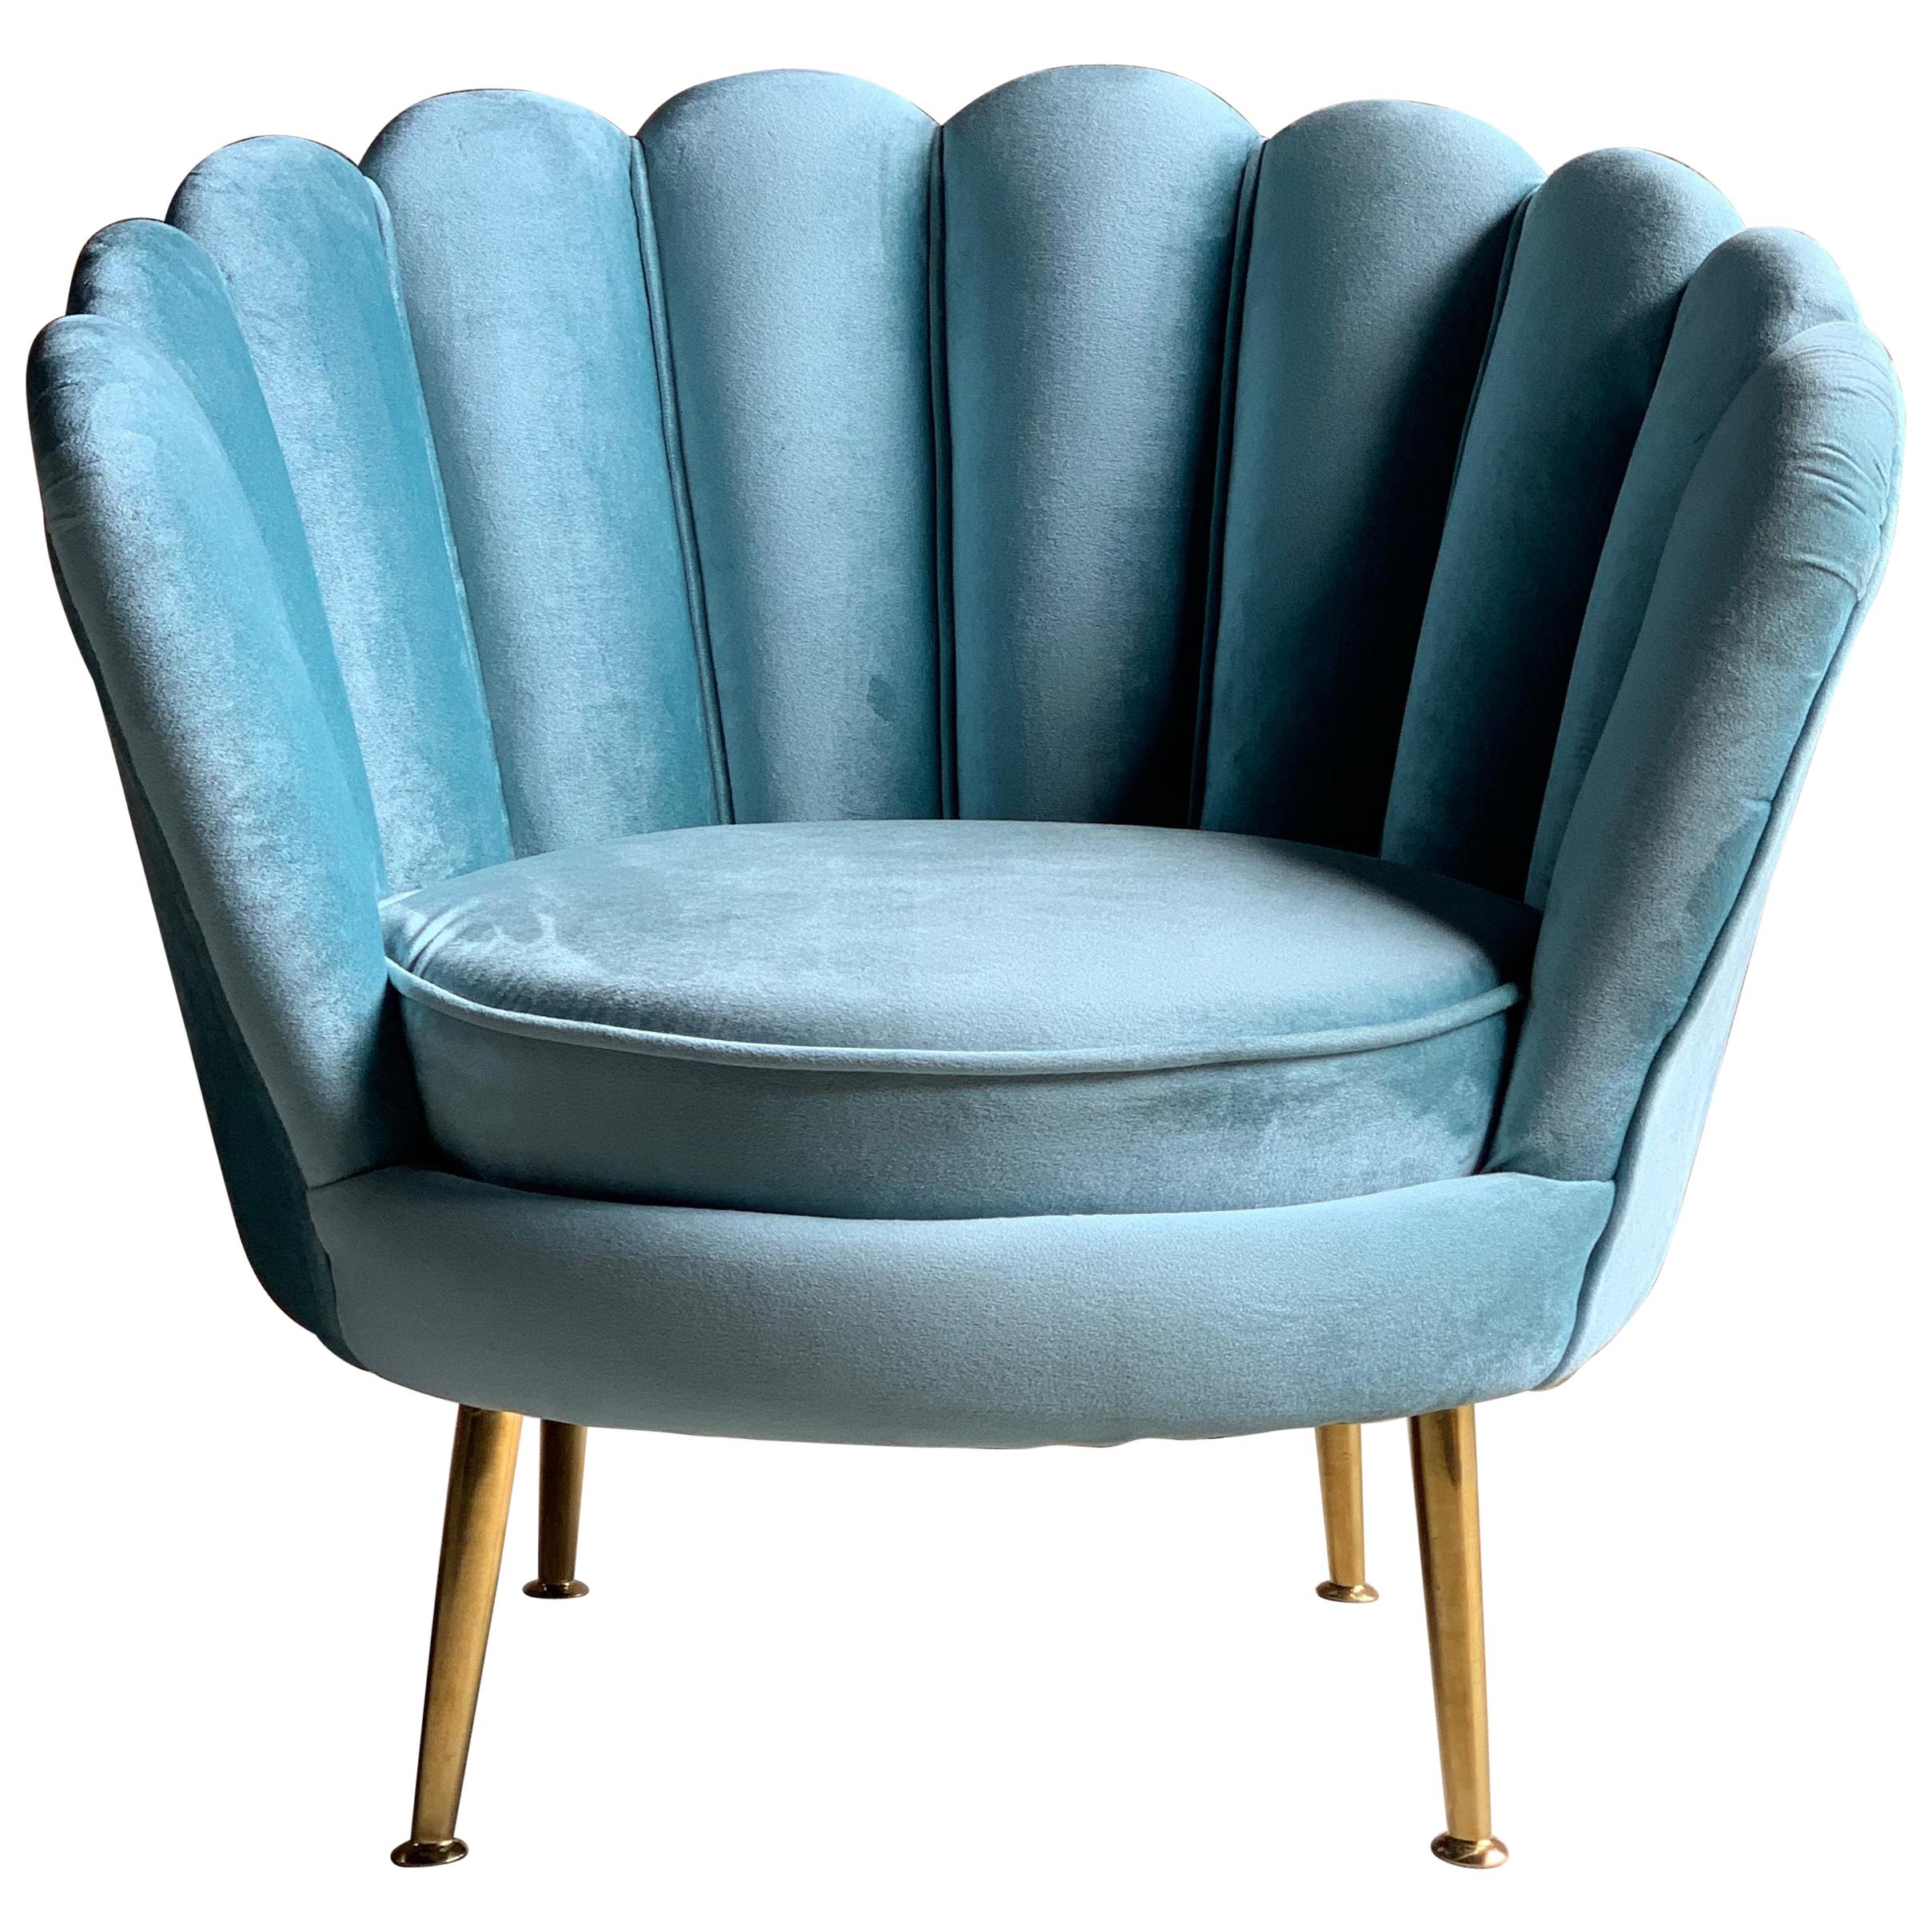 Art Deco Boudoir Cocktail Chair in Turquoise Velvet 1920s Style